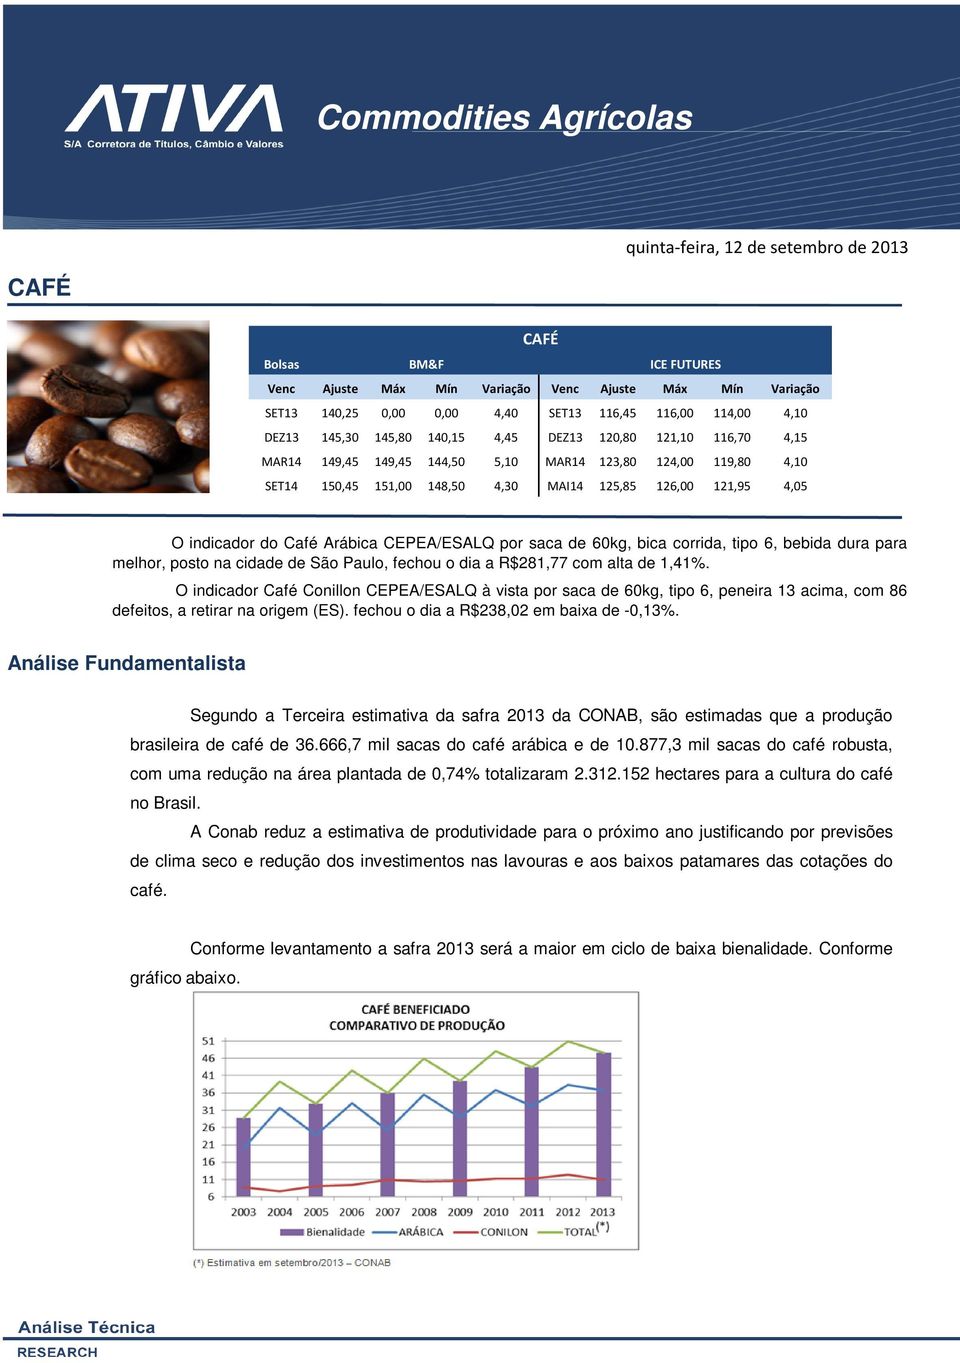 4,05 O indicador do Café Arábica CEPEA/ESALQ por saca de 60kg, bica corrida, tipo 6, bebida dura para melhor, posto na cidade de São Paulo, fechou o dia a R$281,77 com alta de 1,41%.